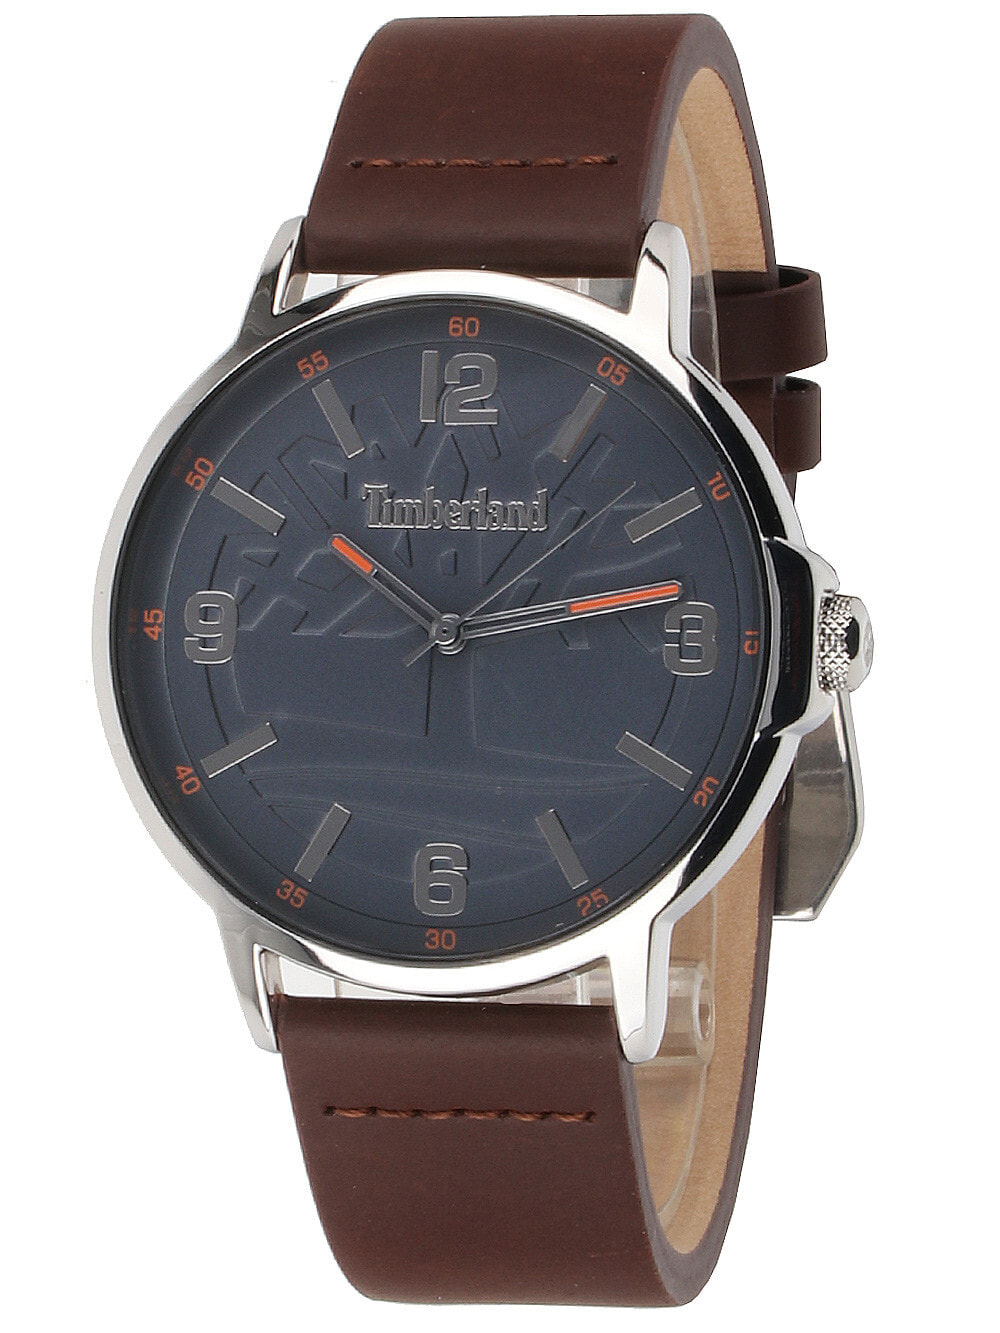 Мужские наручные часы с коричневым кожаным ремешком Timberland TBL16011JYS.03 Glencove mens 43mm 3ATM